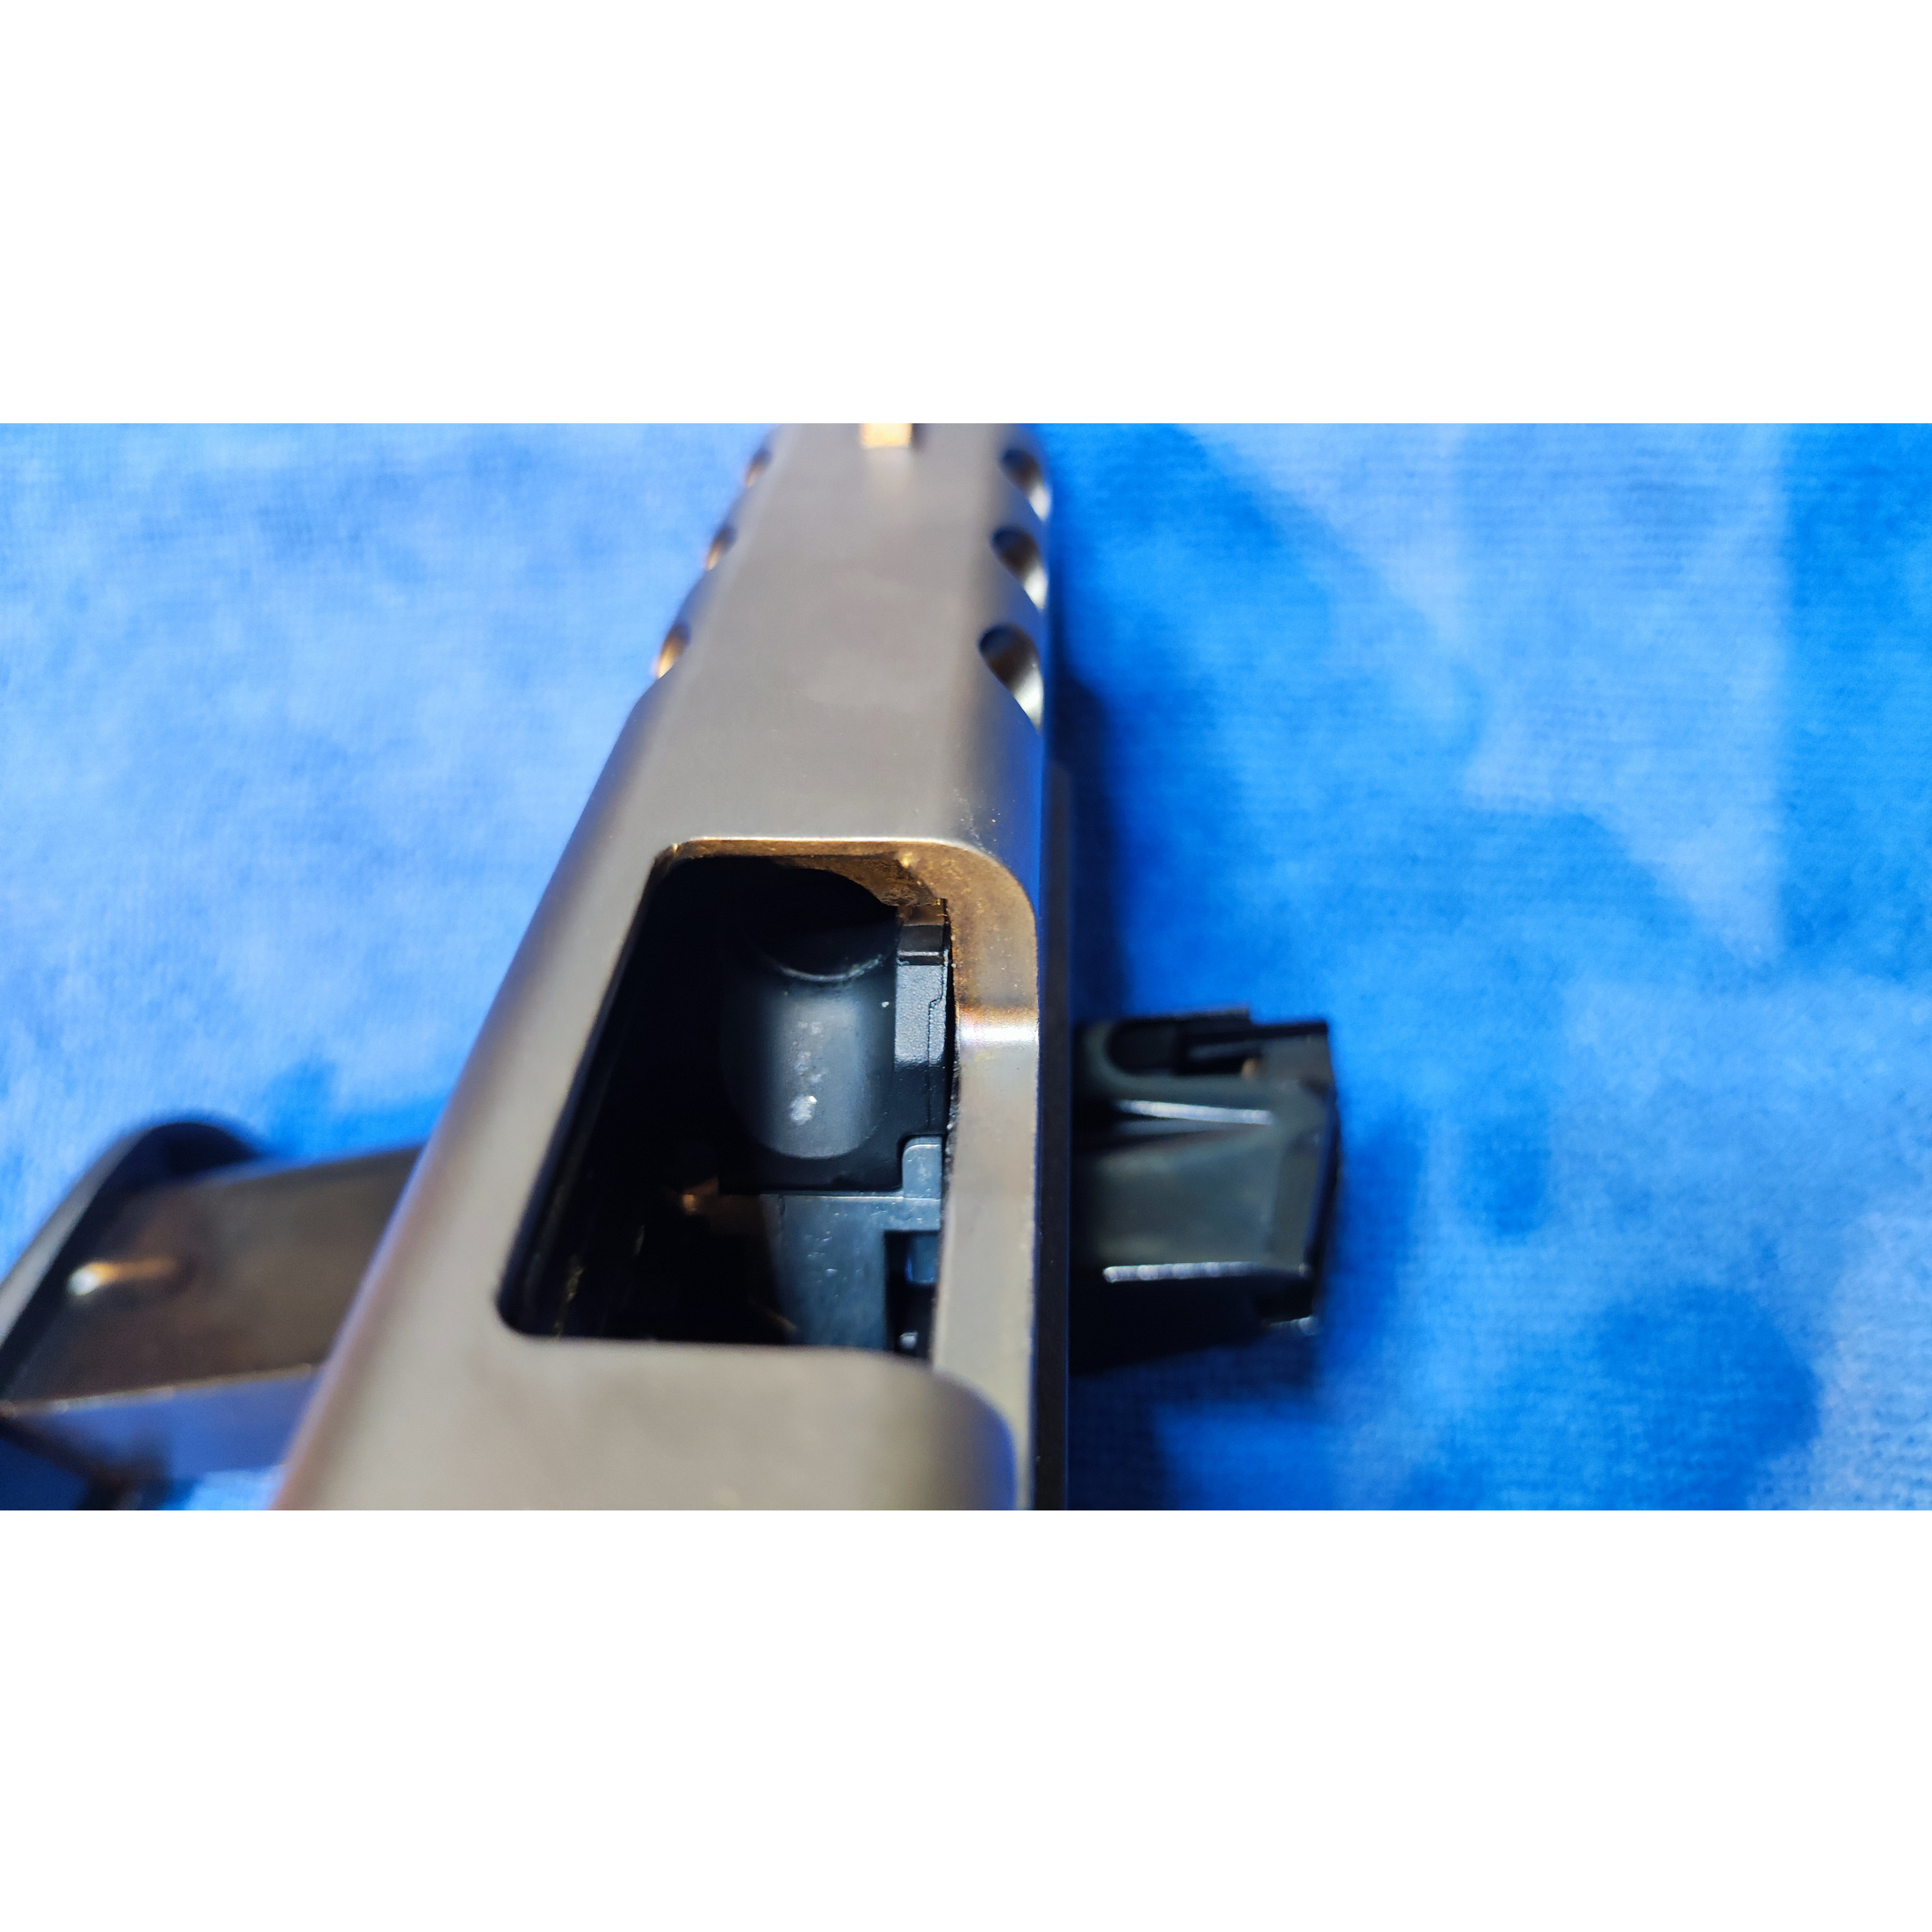 Reserviert - Zoraki 4918 Titan 9 mm PAK SRS Waffe – guter Zustand